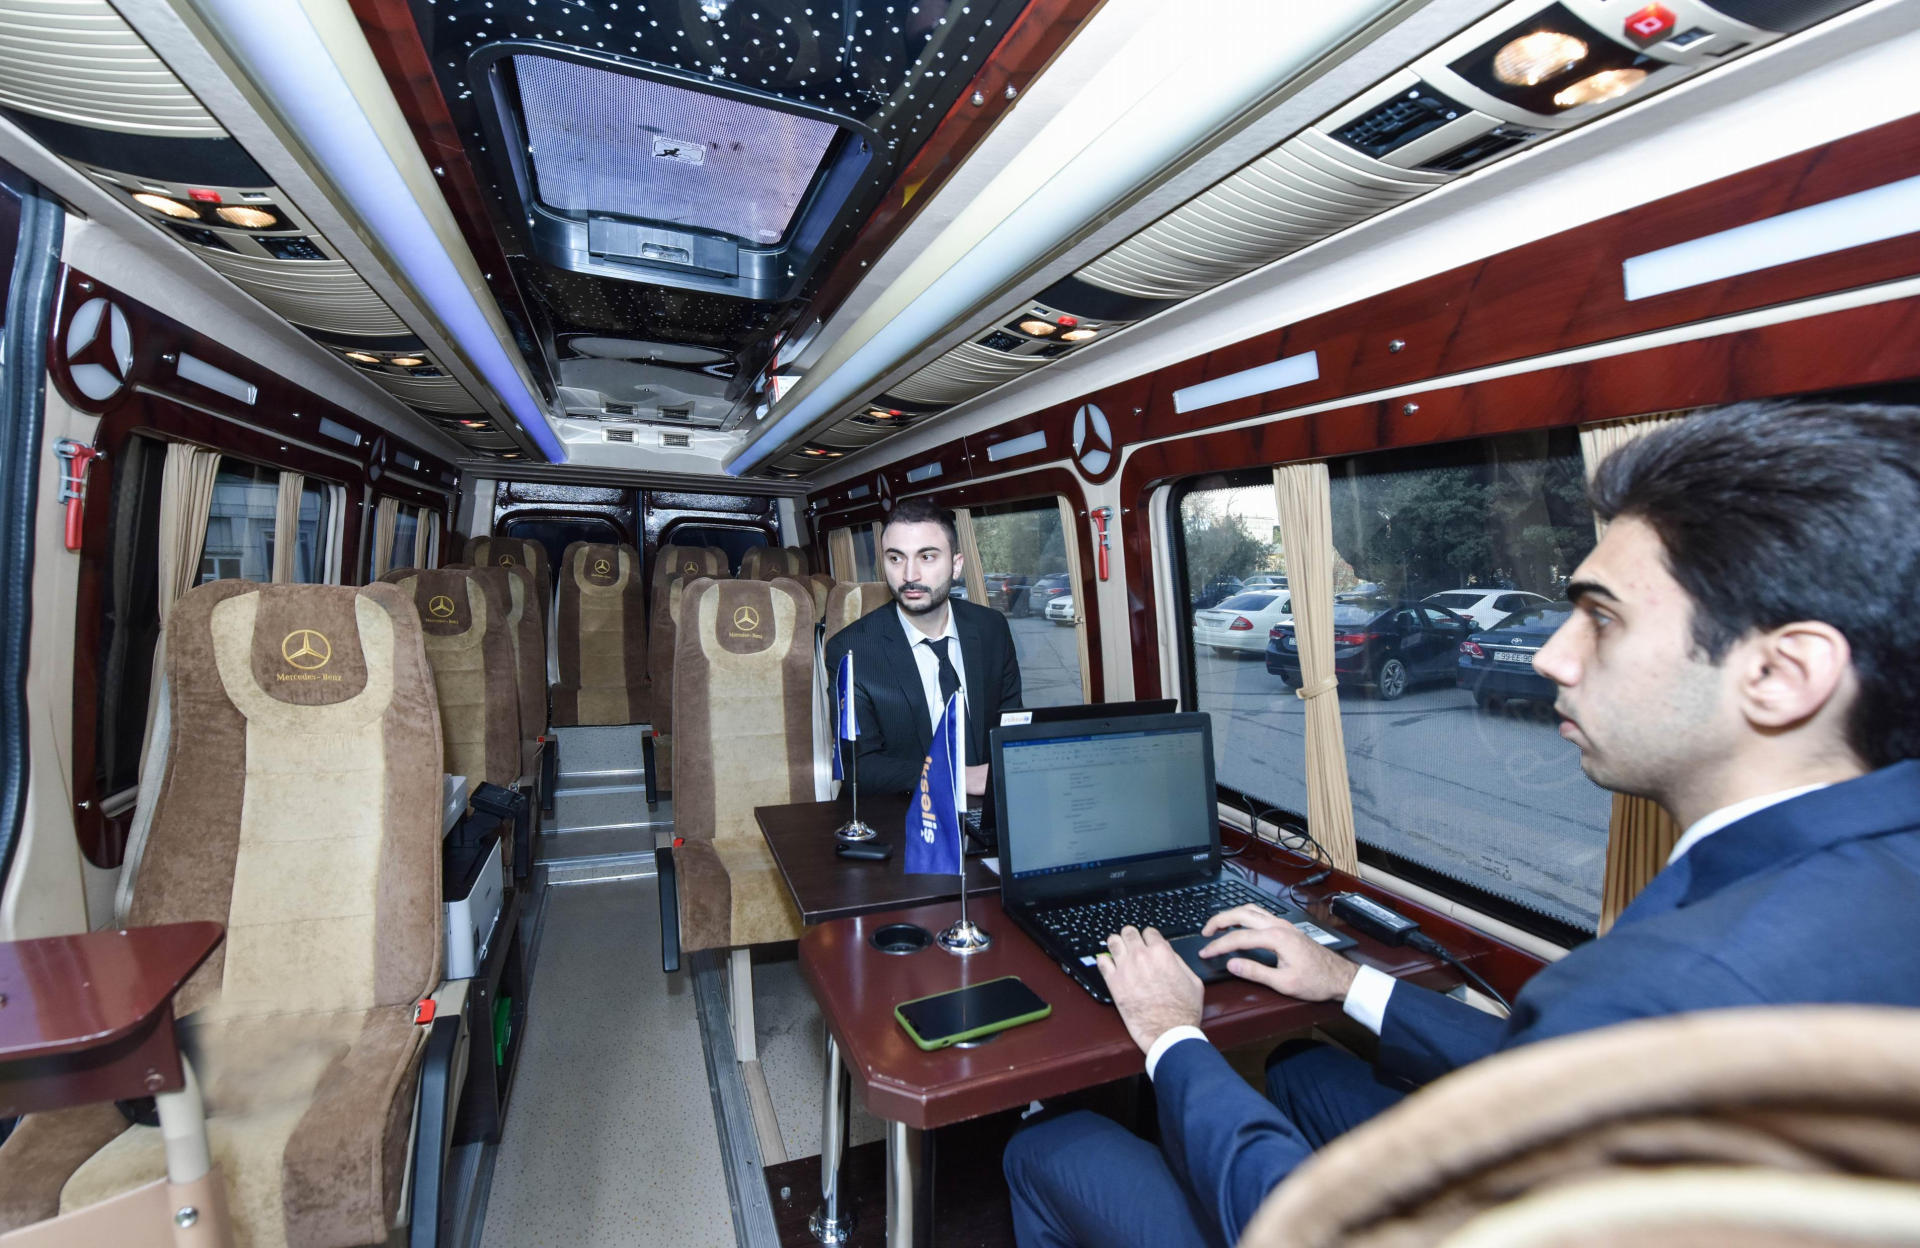 Автобусы выездной регистрации на конкурс "Восхождение" отправились в регионы Азербайджана (ФОТО)